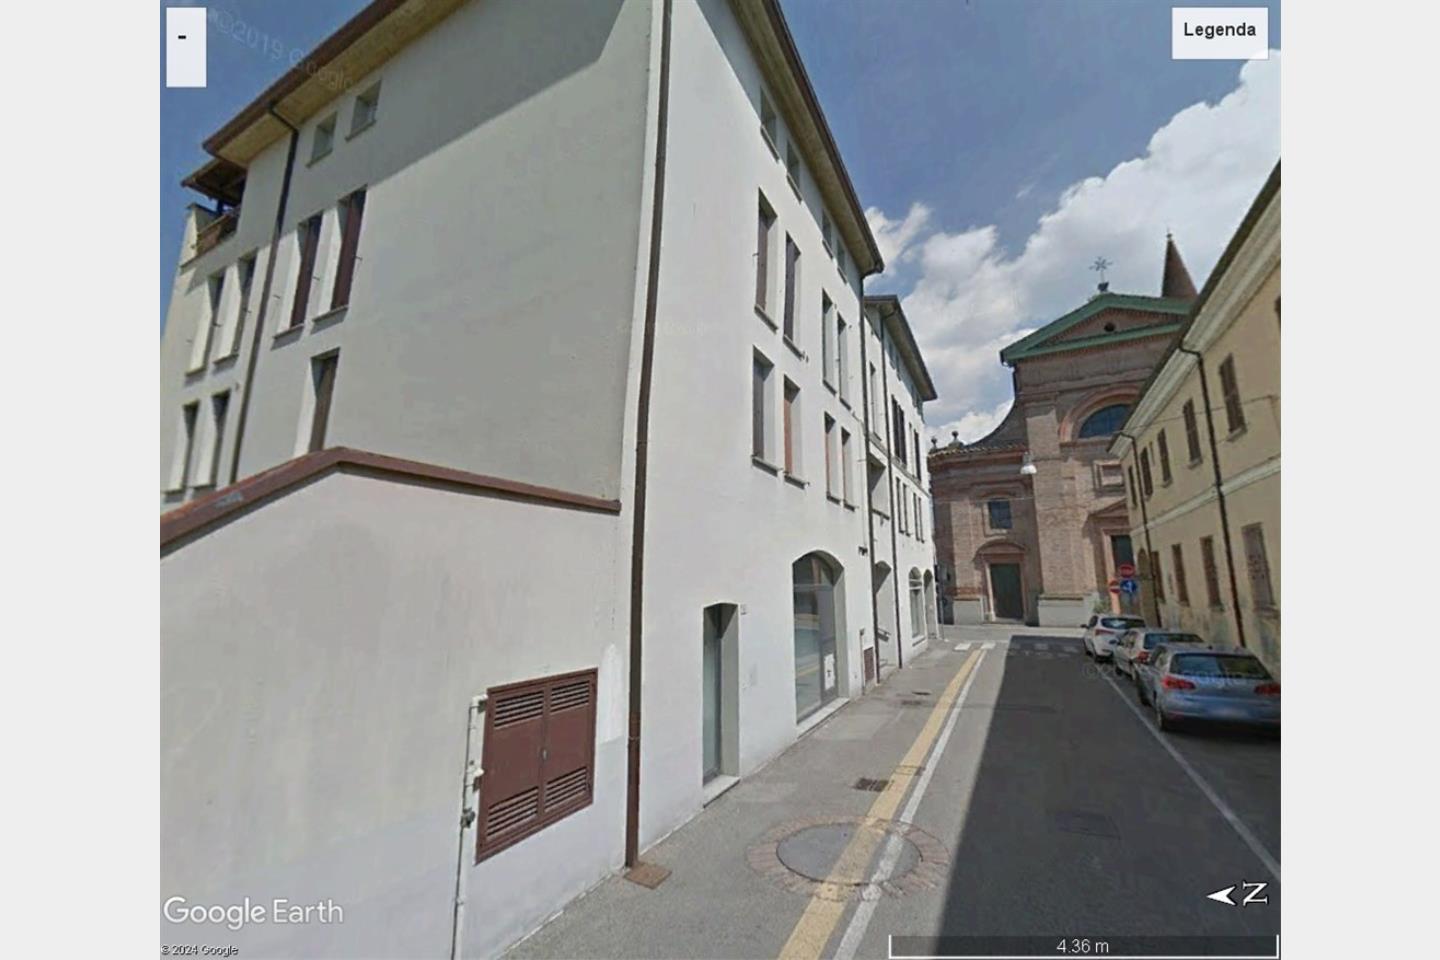 Ufficio in Vendita Castel Bolognese